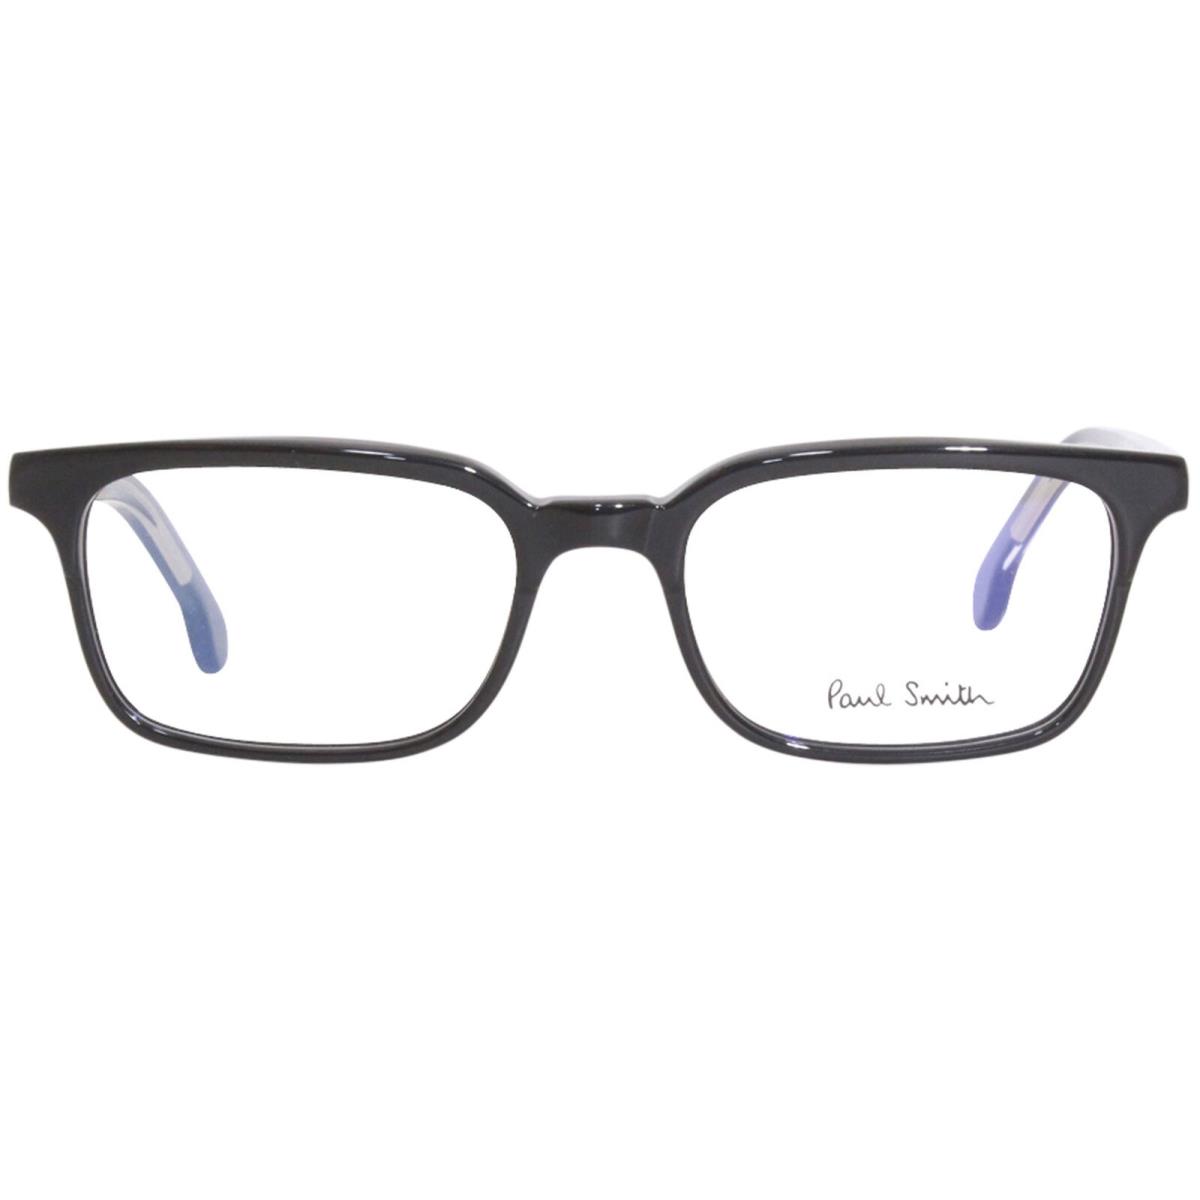 Paul Smith Adelaide-V1 PSOP002V1 001 Eyeglasses Black Ink/crystal Optical Frame - Frame: Black